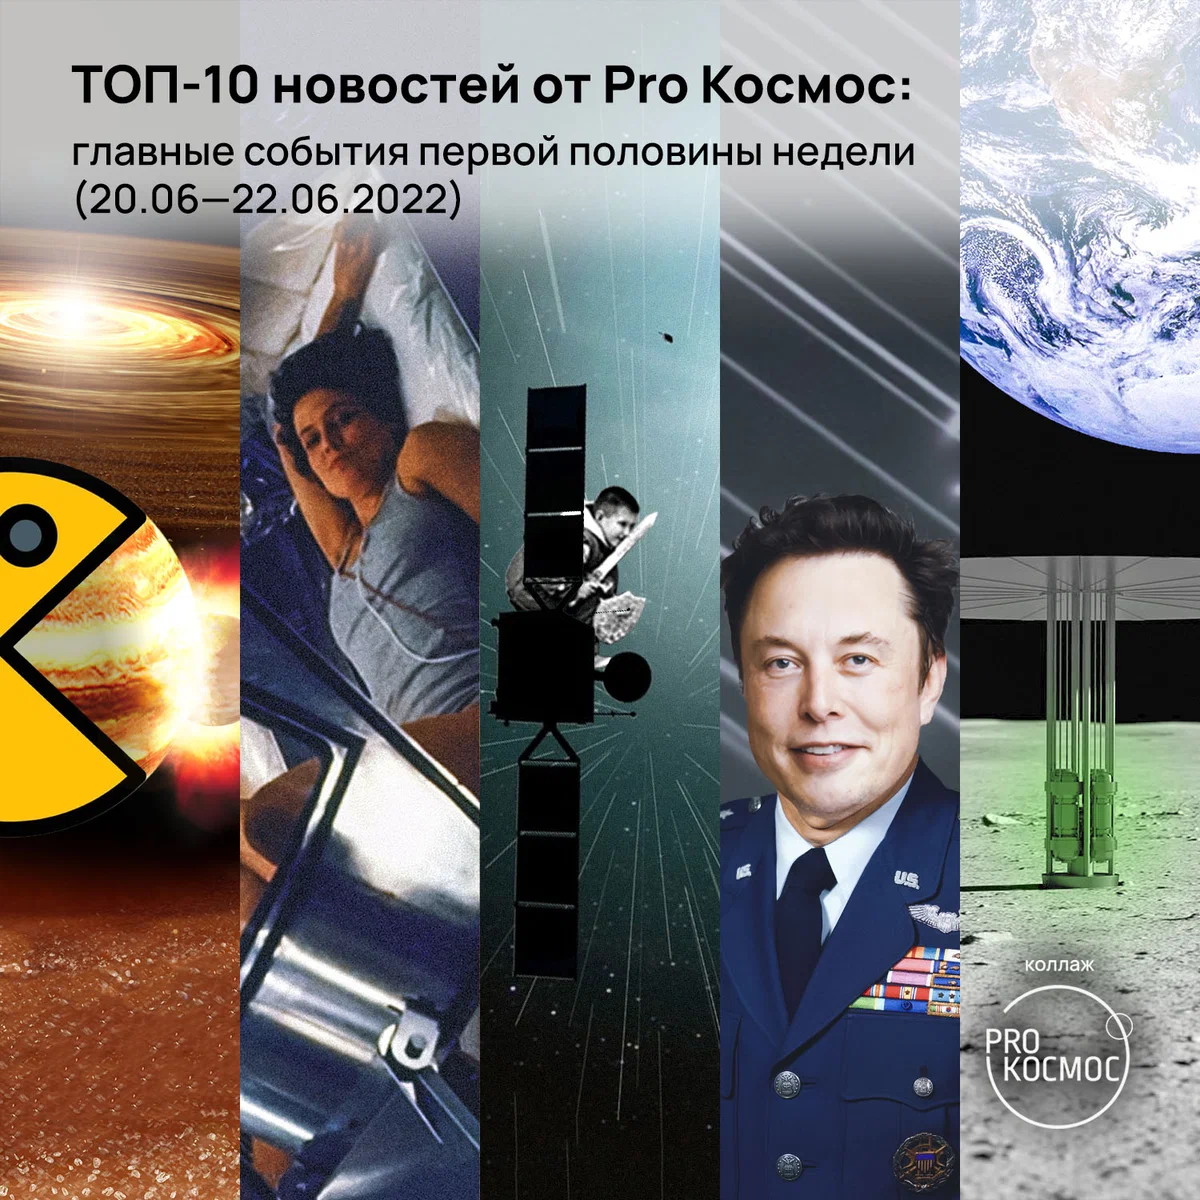 ТОП-10 новостей от Pro Космос: главные события первой половины недели (20.06—22.06.2022) height=1200px width=1200px